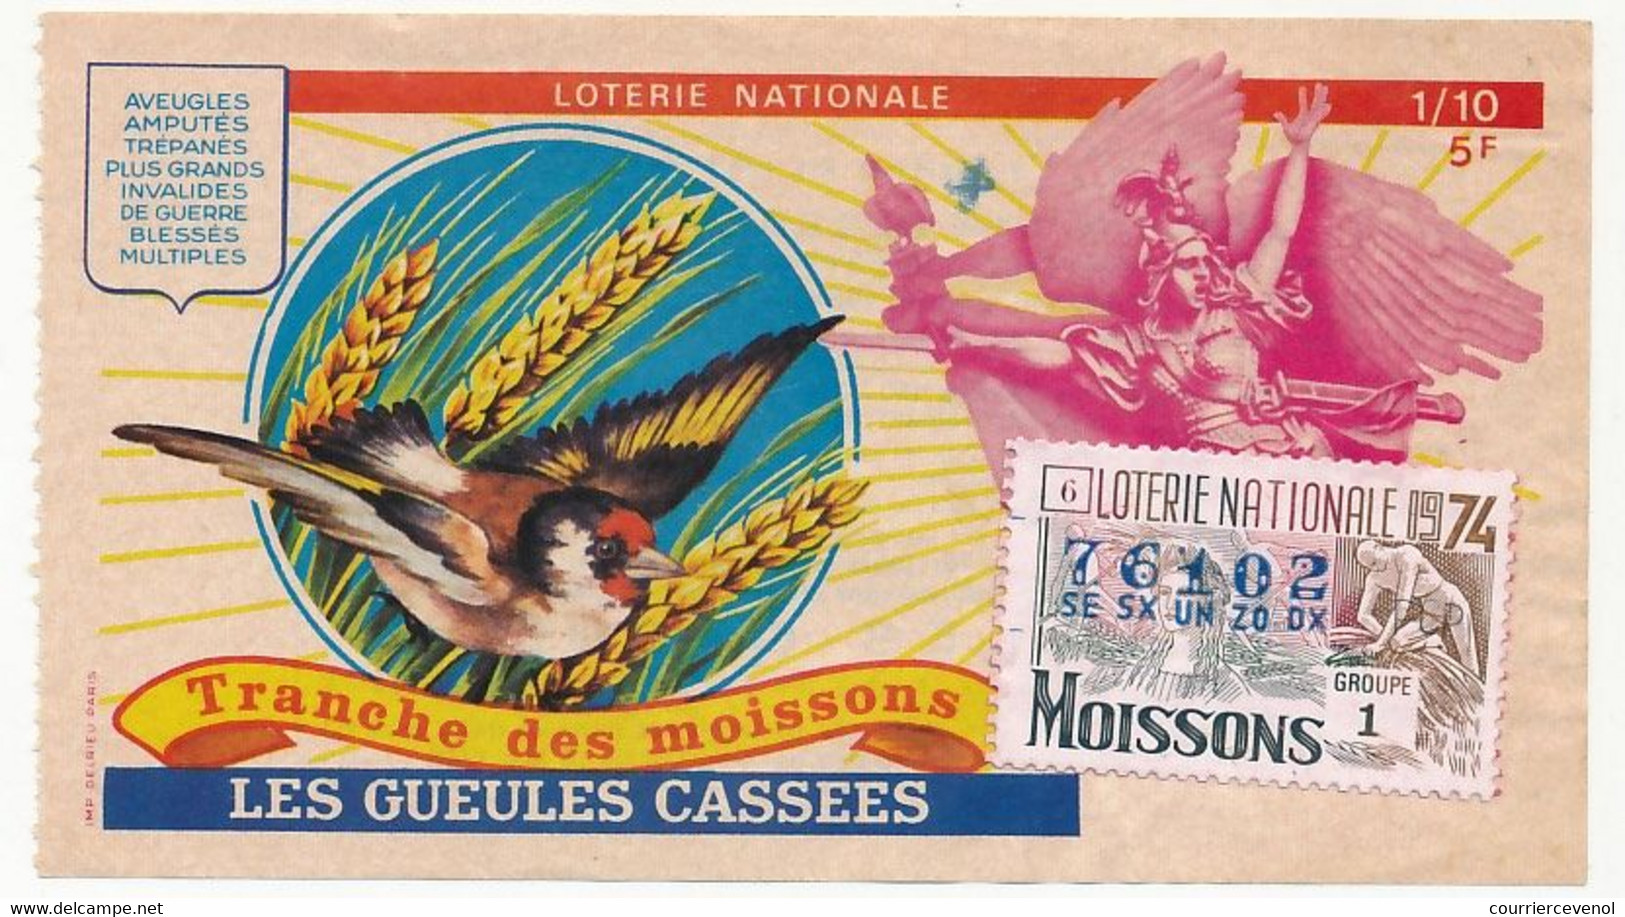 FRANCE - Loterie Nationale - 1/10ème - Les Gueules Cassées  - Tranche Des Moissons - 1974 - Lottery Tickets